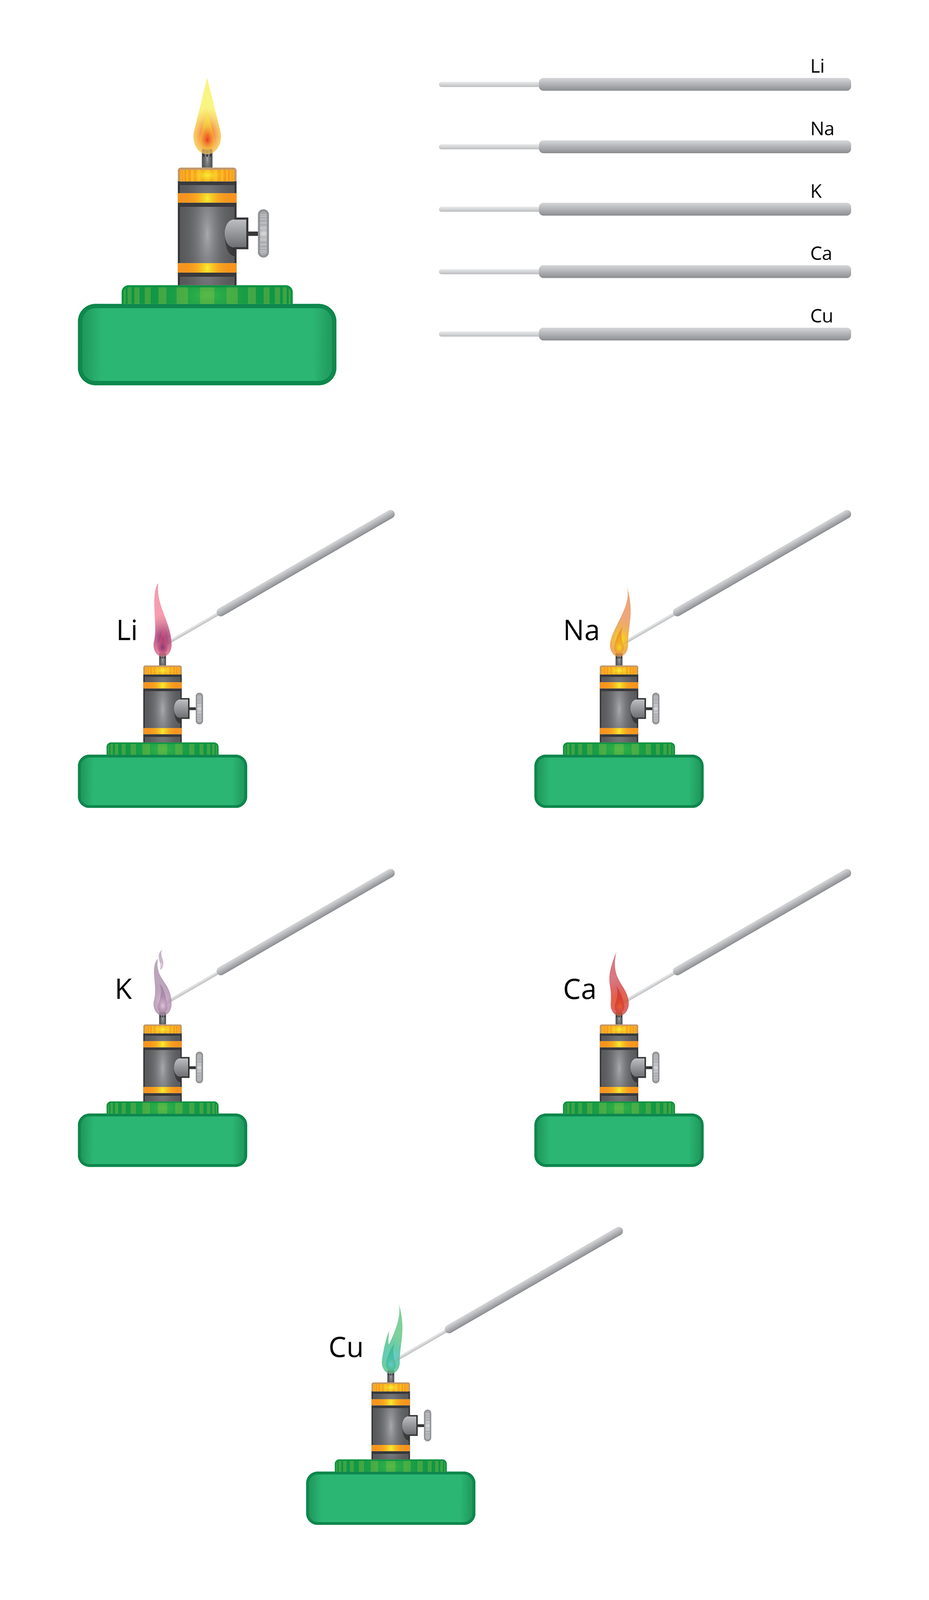 Aplikacja służy do symulowania efektu, jaki niektóre metale wywołują na płomień. Z lewej strony okna znajduje się rysunek zapalonego palnika spirytusowego, z prawej natomiast patyczki z cienkimi końcami opisane symbolami metali: Li, Na, K, Ca i Cu. Przeciągnięcie patyczka w obszar płomienia powoduje na rysunku zmianę jego koloru na taki, jaki przybrałby ogień podczas prawdziwej próby płomieniowej: Lit zabarwia na wiśniowo, sód na żółto‑pomarańczowo, potas na różowo‑fioletowo, wapń na czerwono, a miedź na zielono.